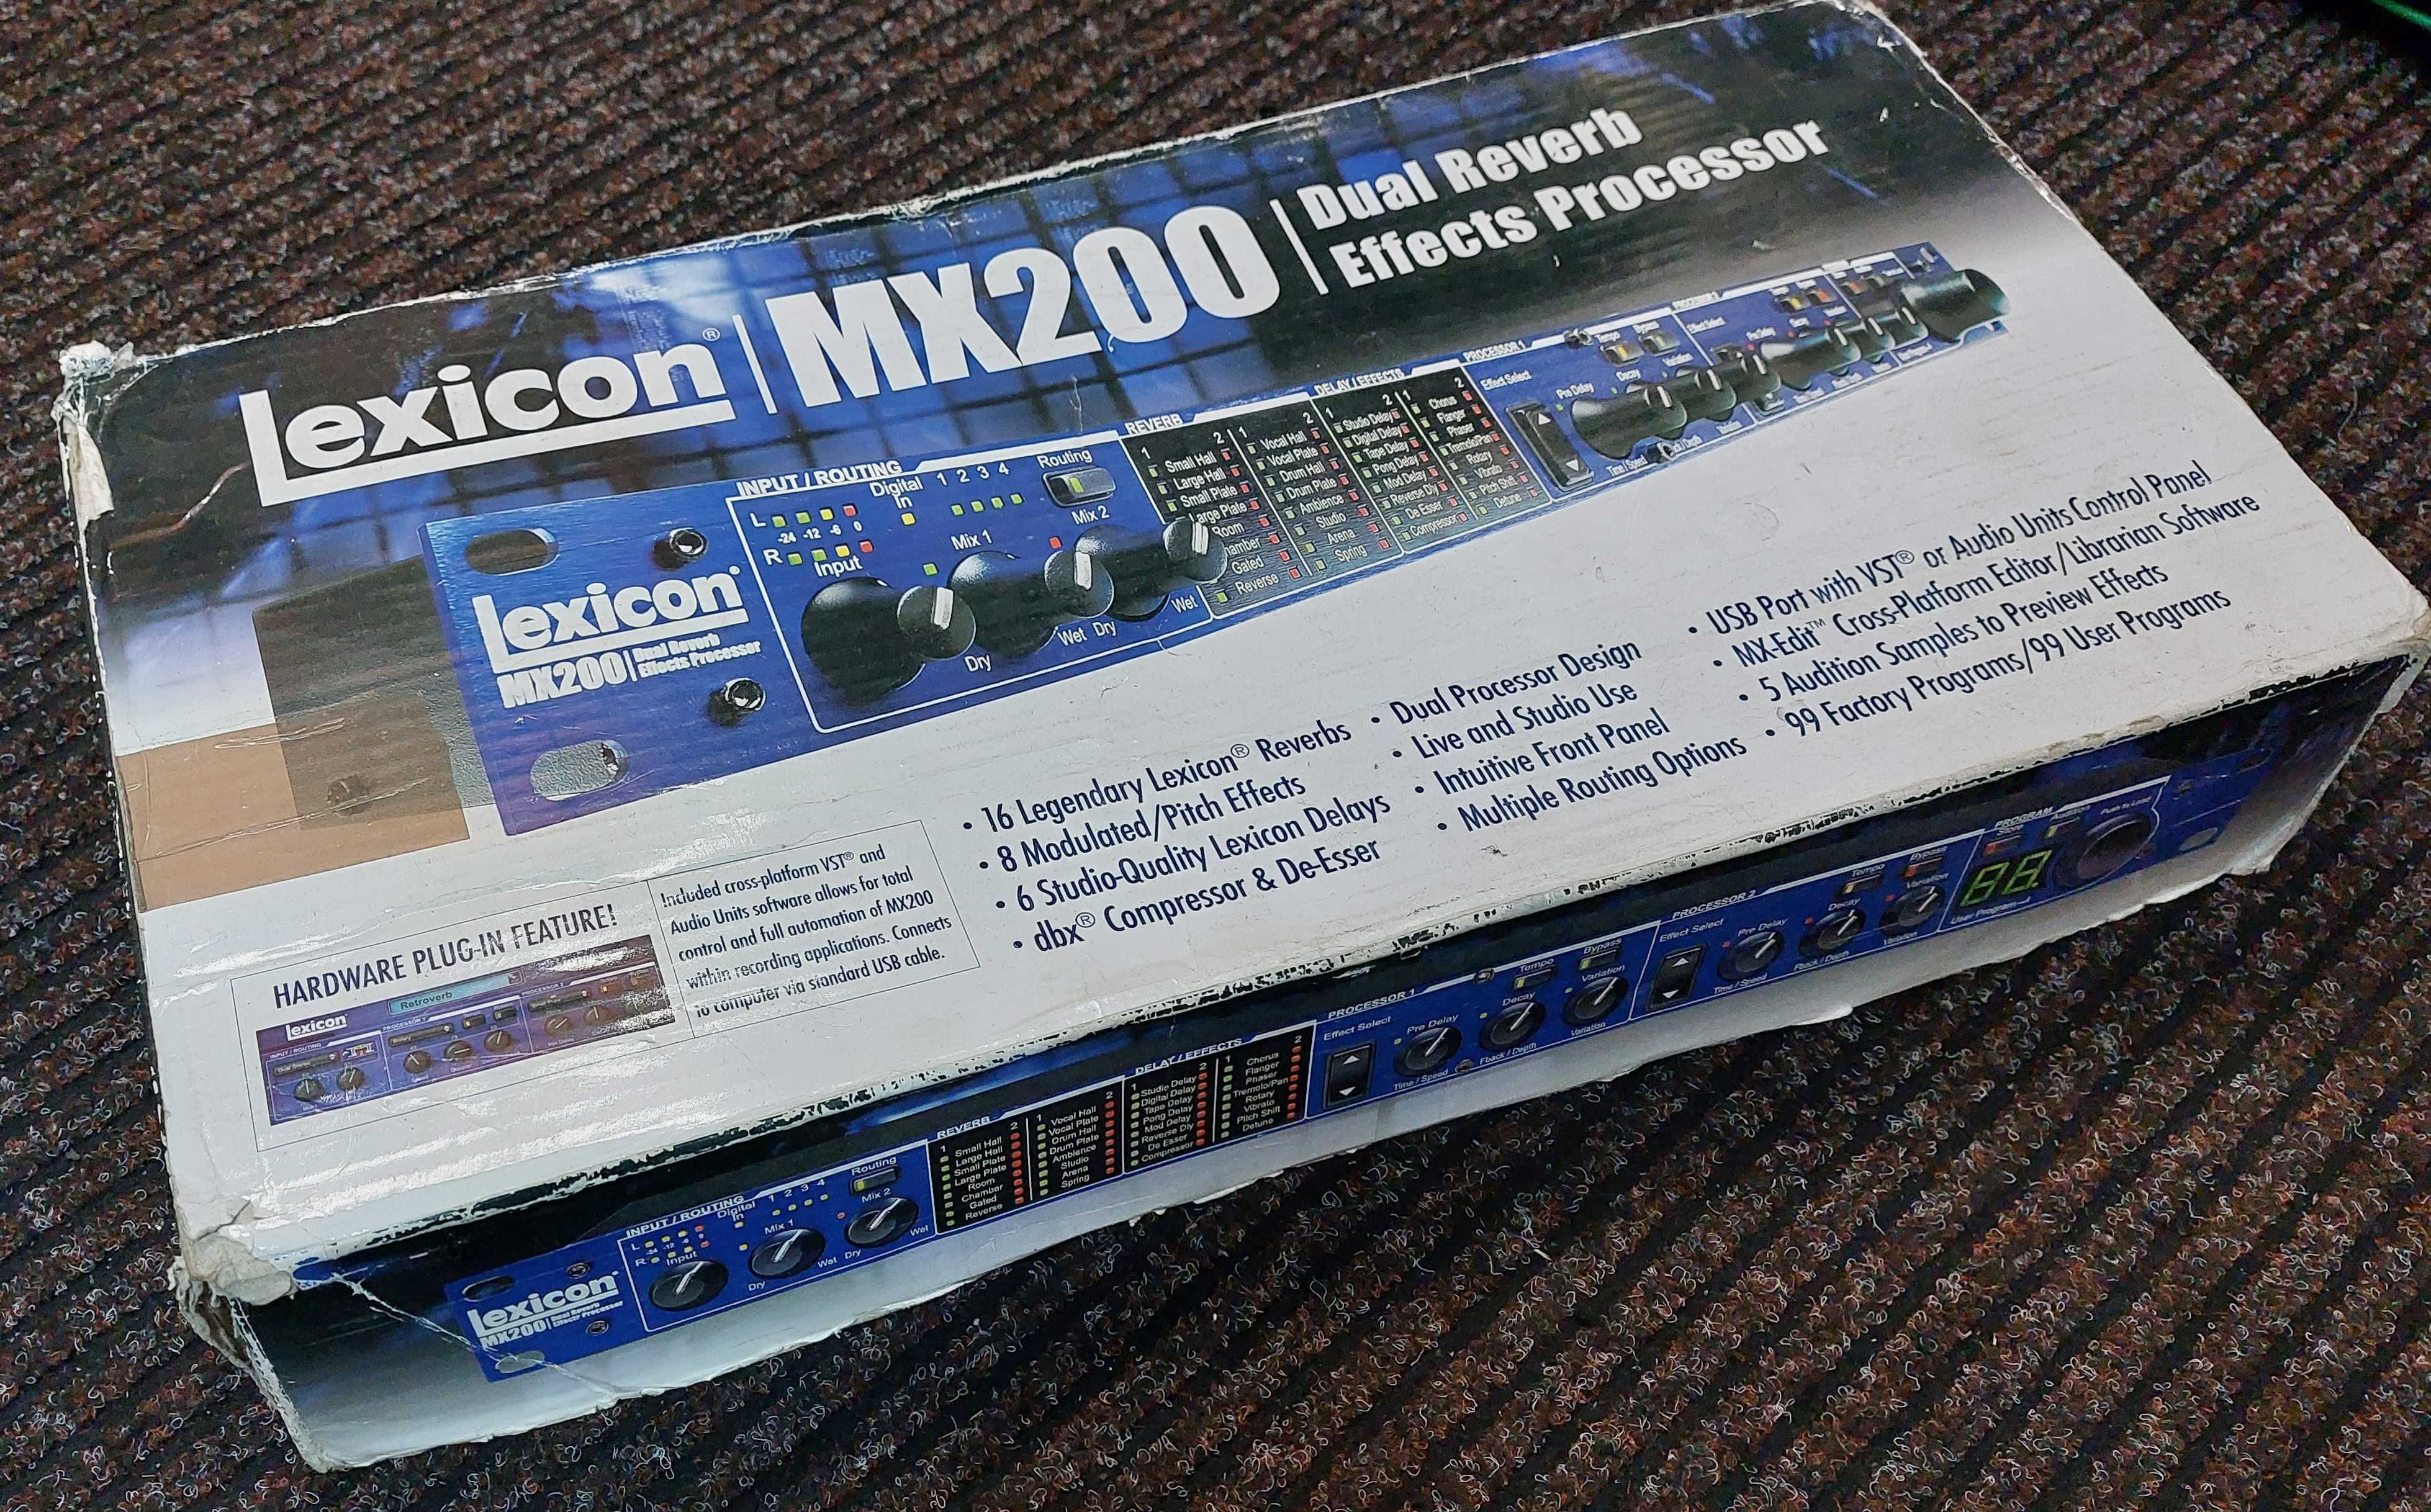 Procesor efektów Lexicon MX200